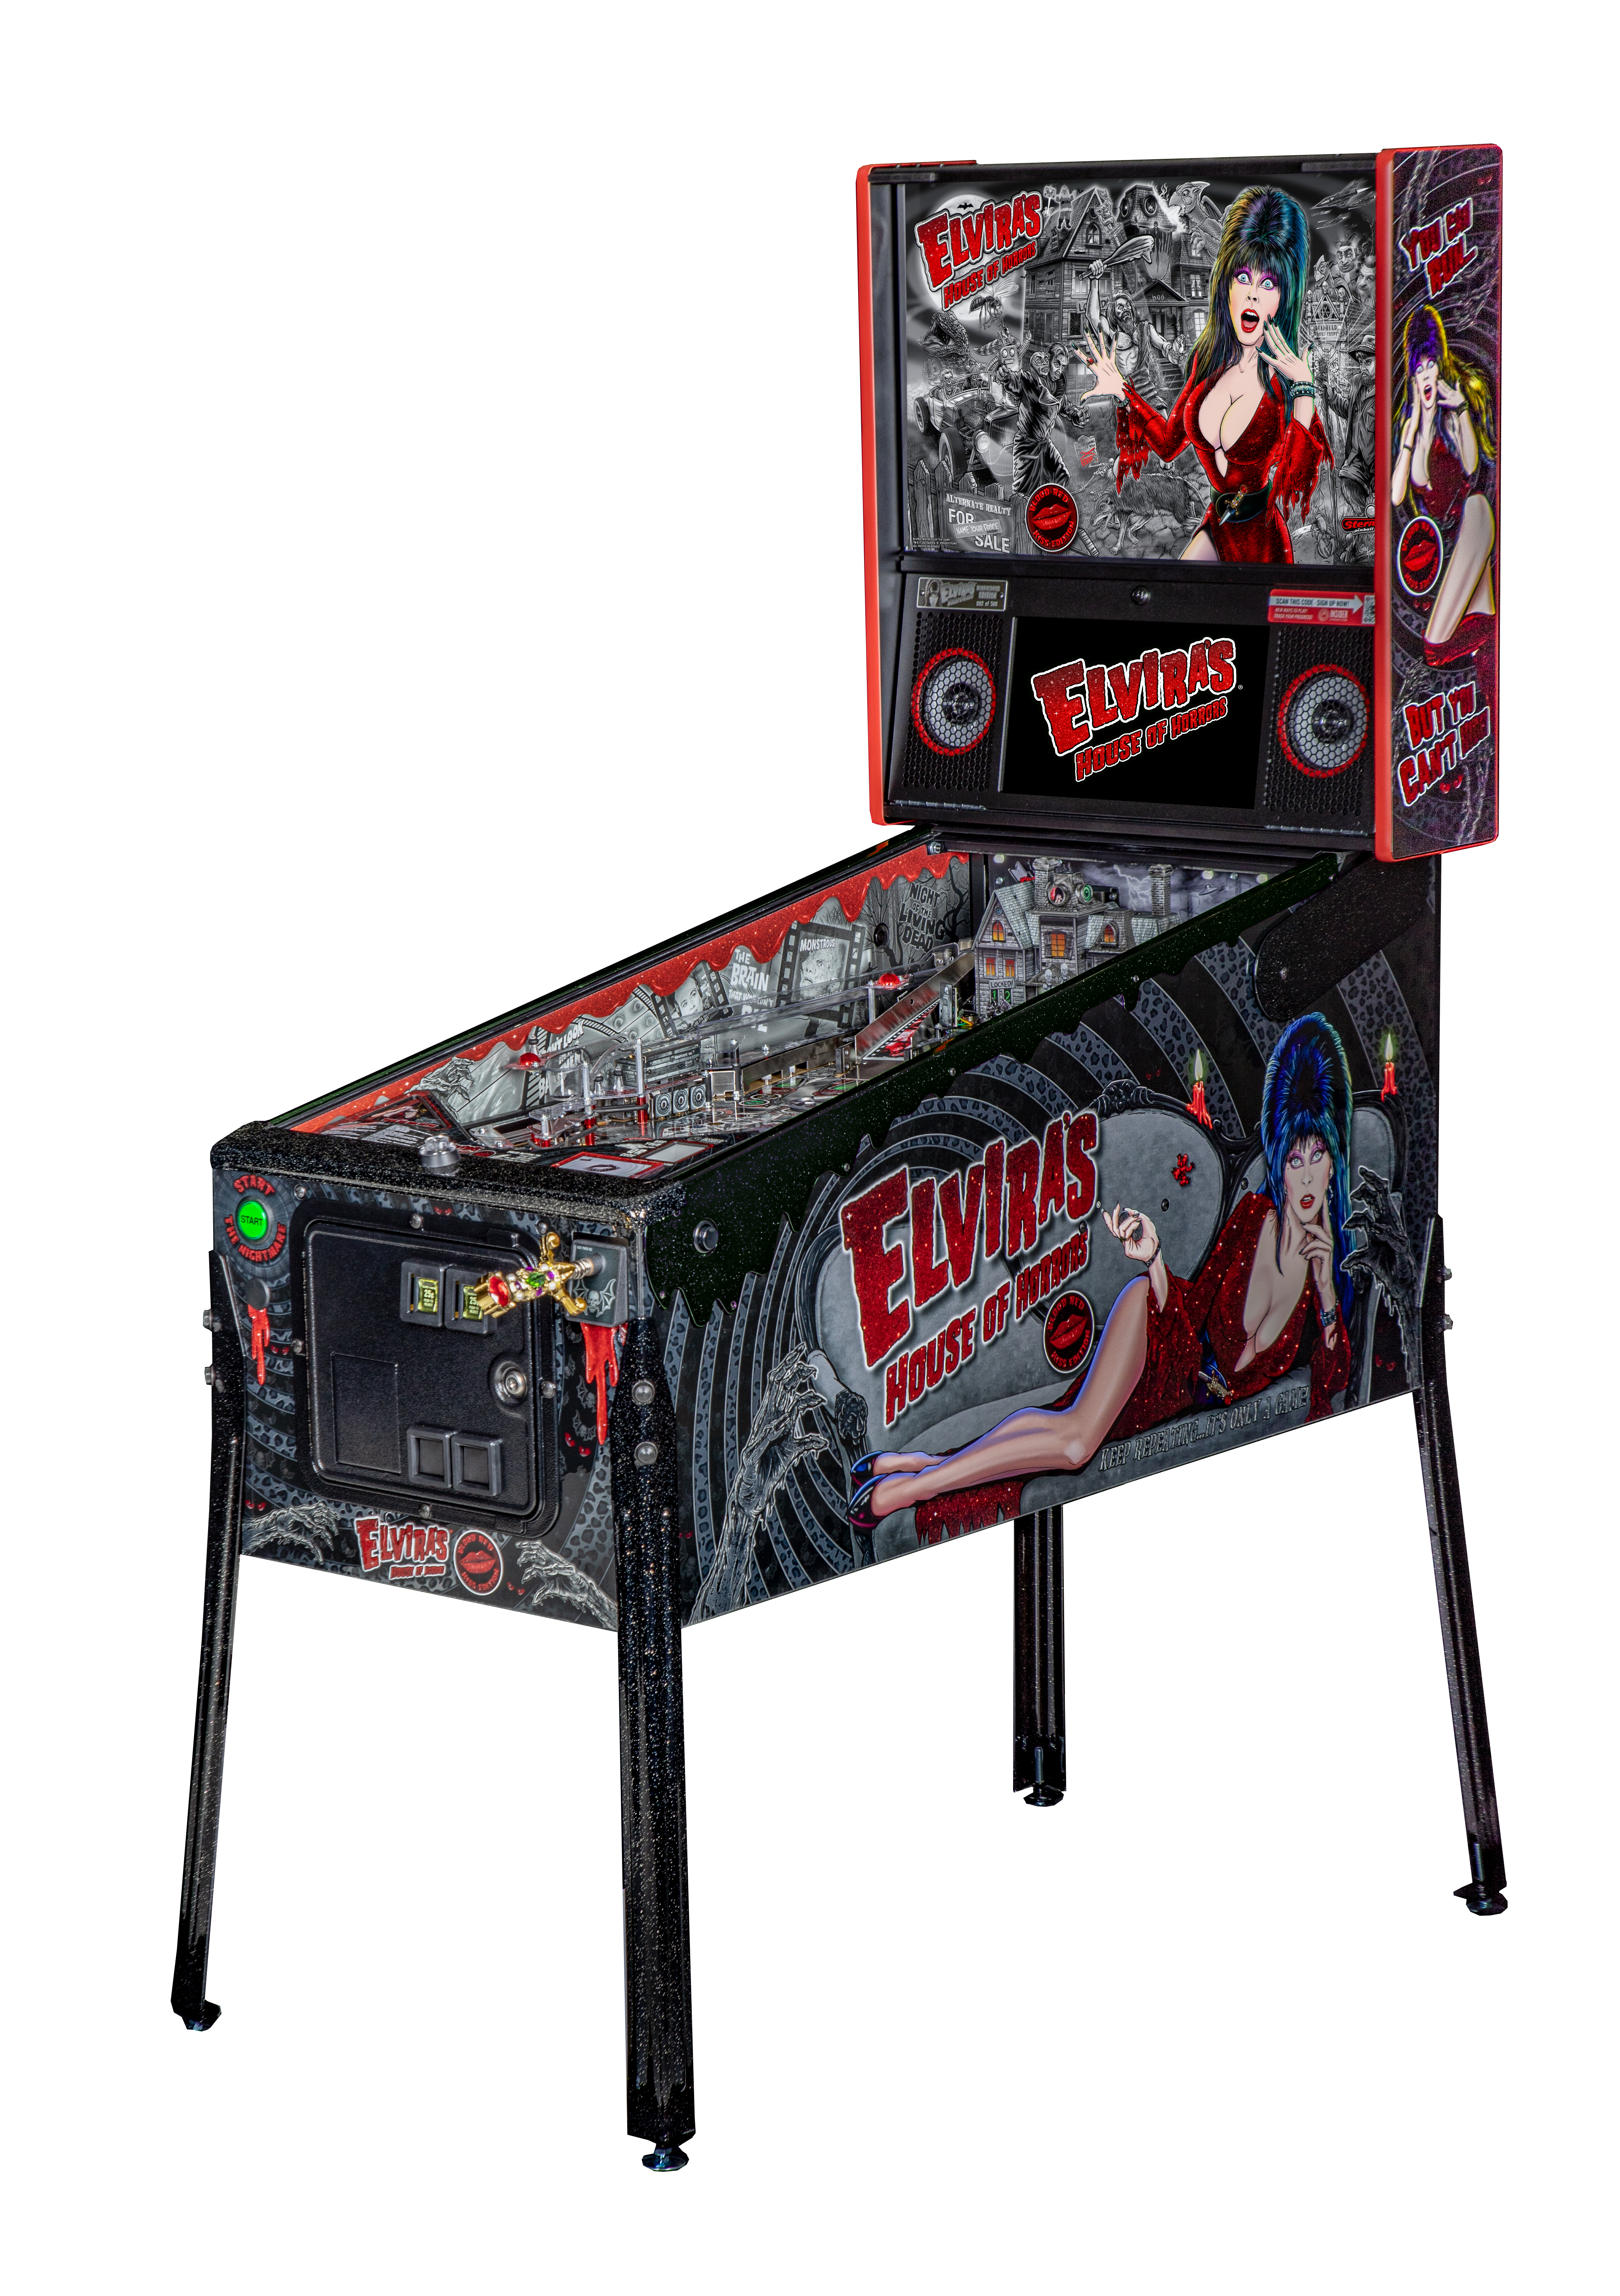 Elvira House of Horrors Premium Edition Pinball Machine